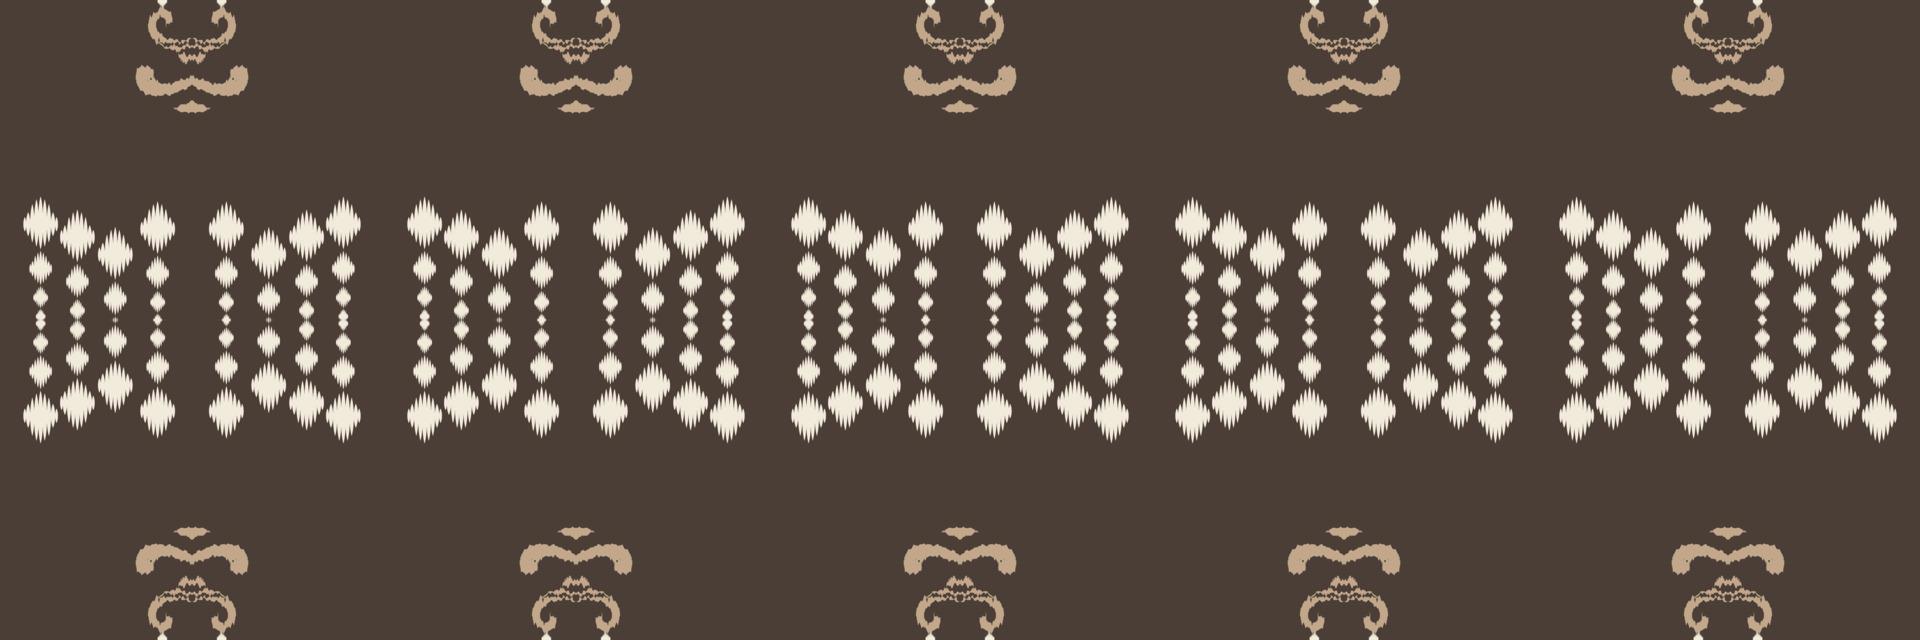 motivo textil batik ikat damasco patrón sin costuras diseño vectorial digital para imprimir saree kurti borneo borde de tela símbolos de pincel muestras elegantes vector